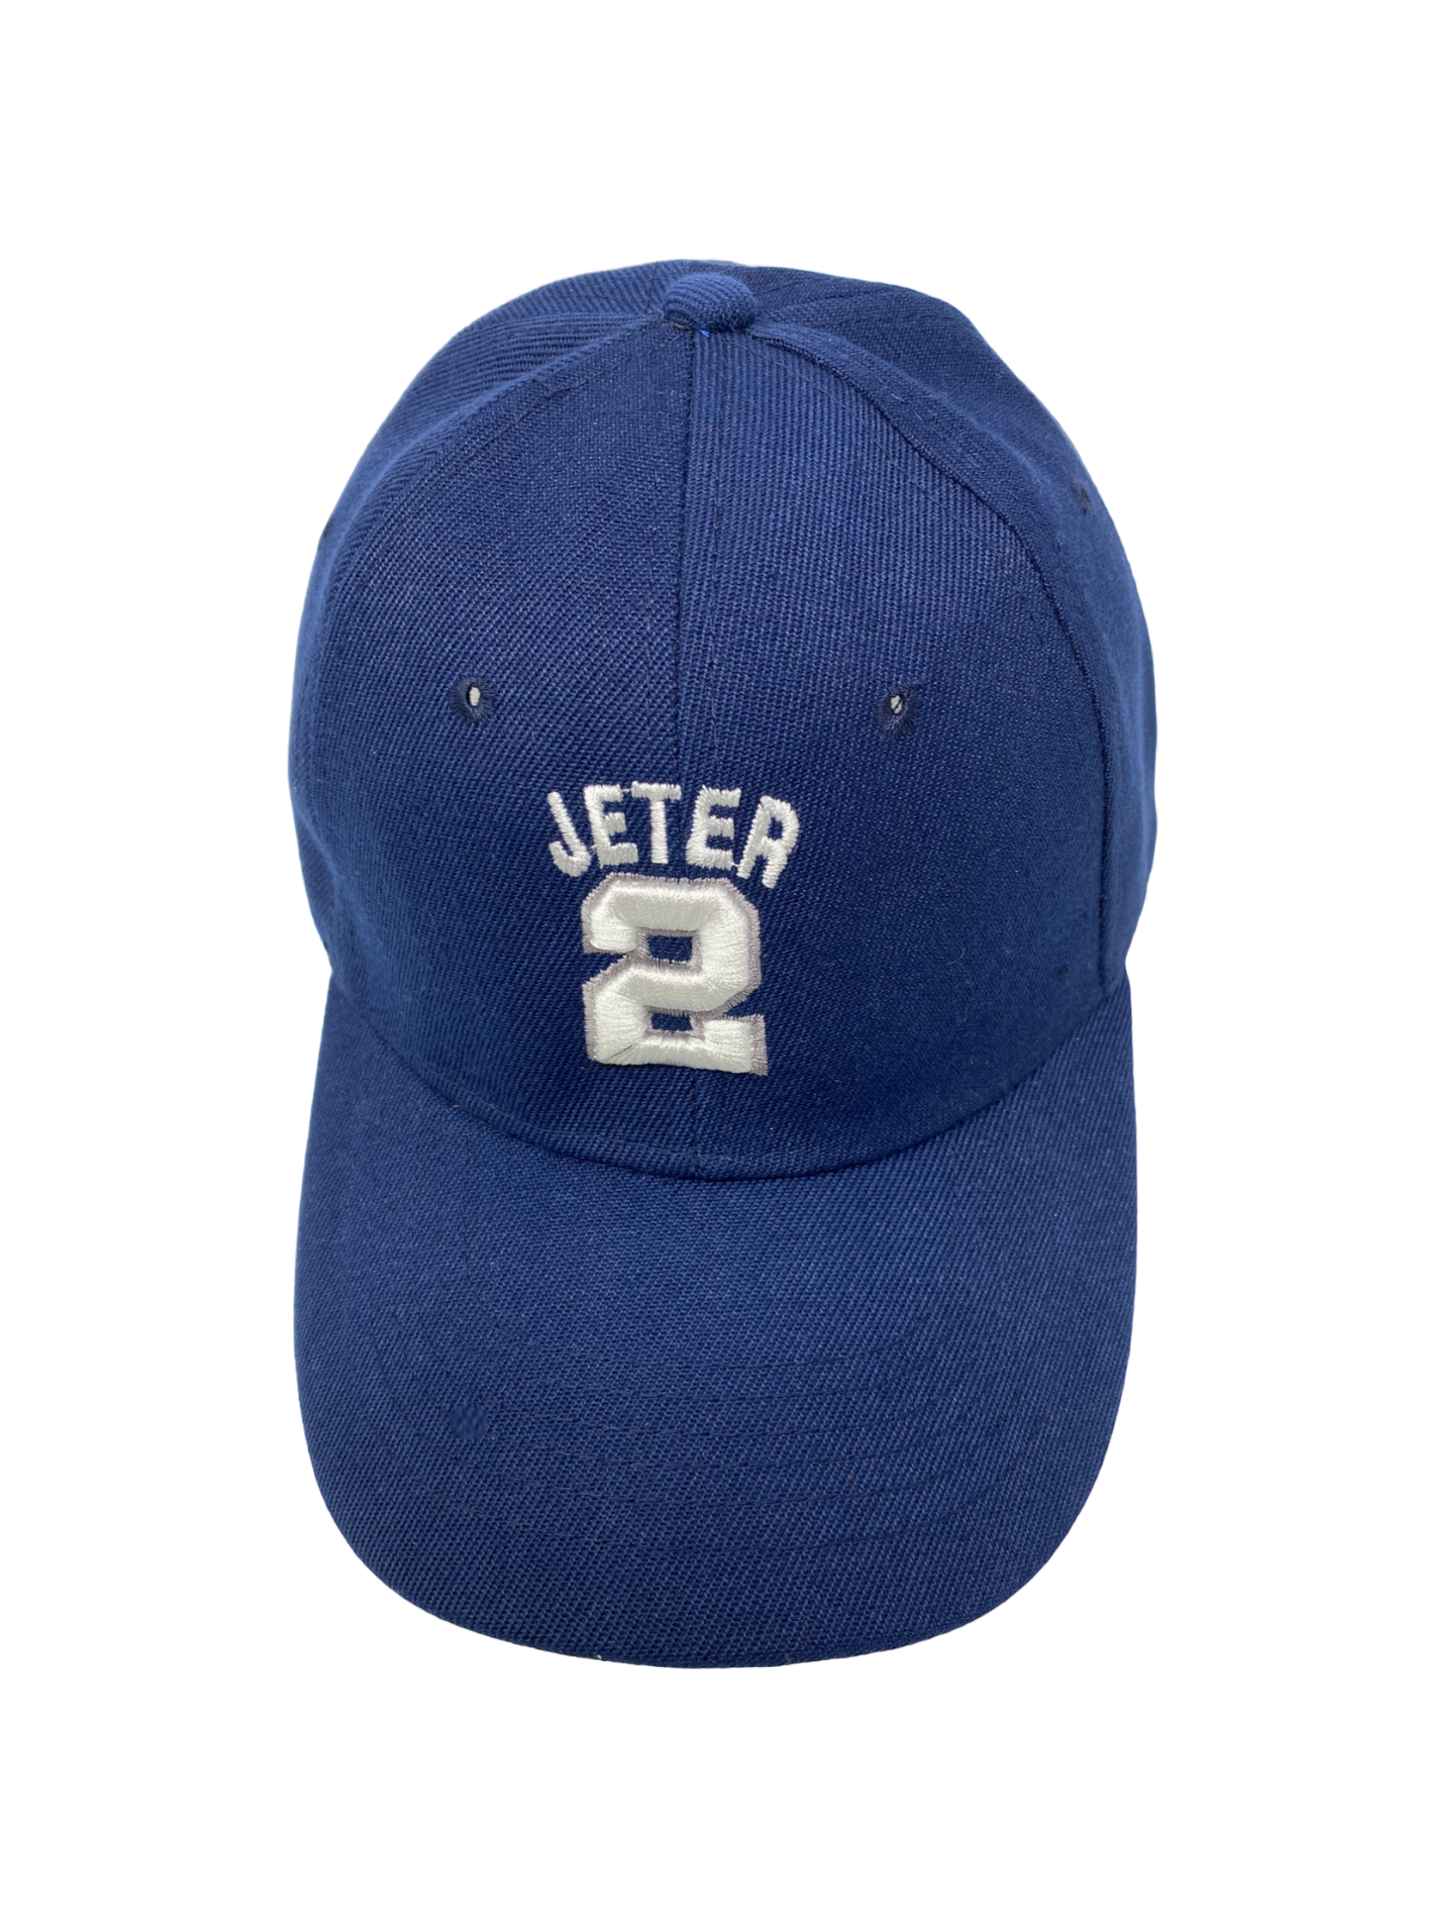 Jeter 2 Baseball Hat